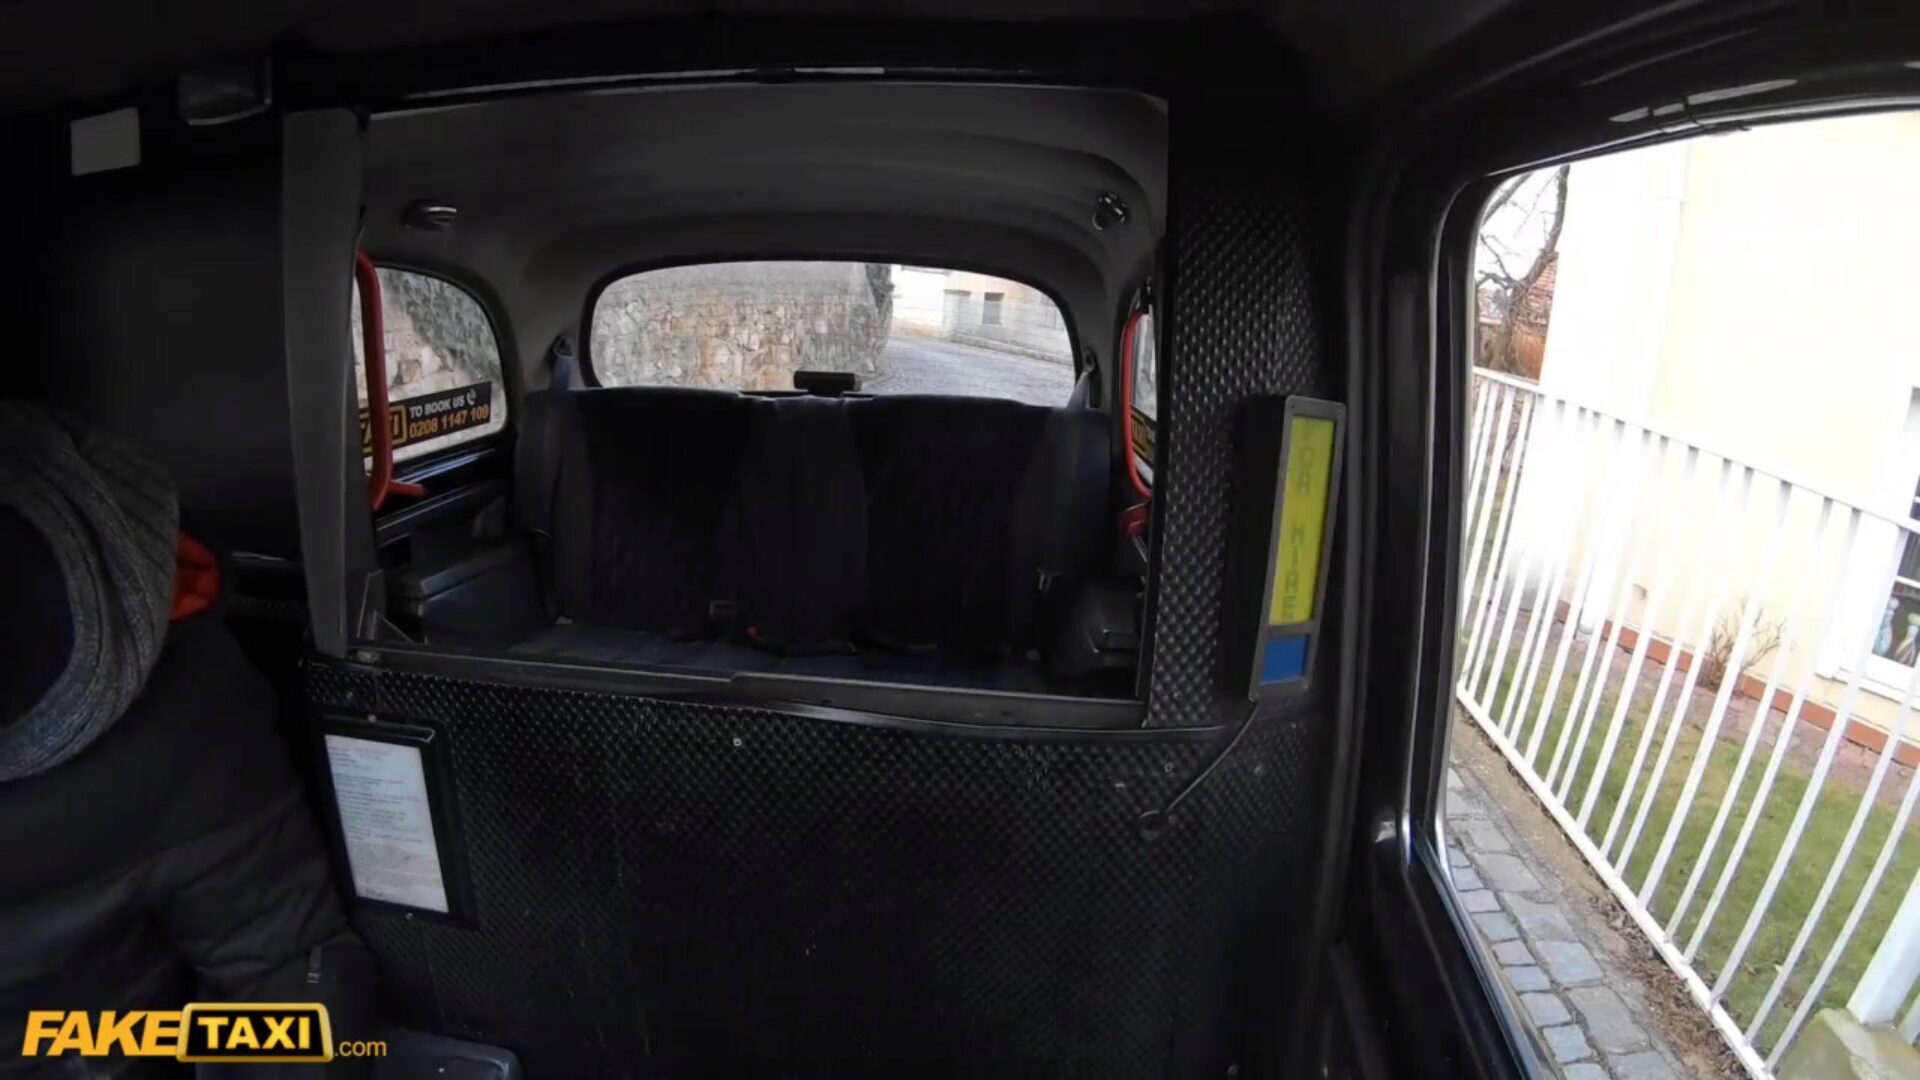 taxi fals miere asiatică primește ciorapul rupt și pizda umplută de taxist italian